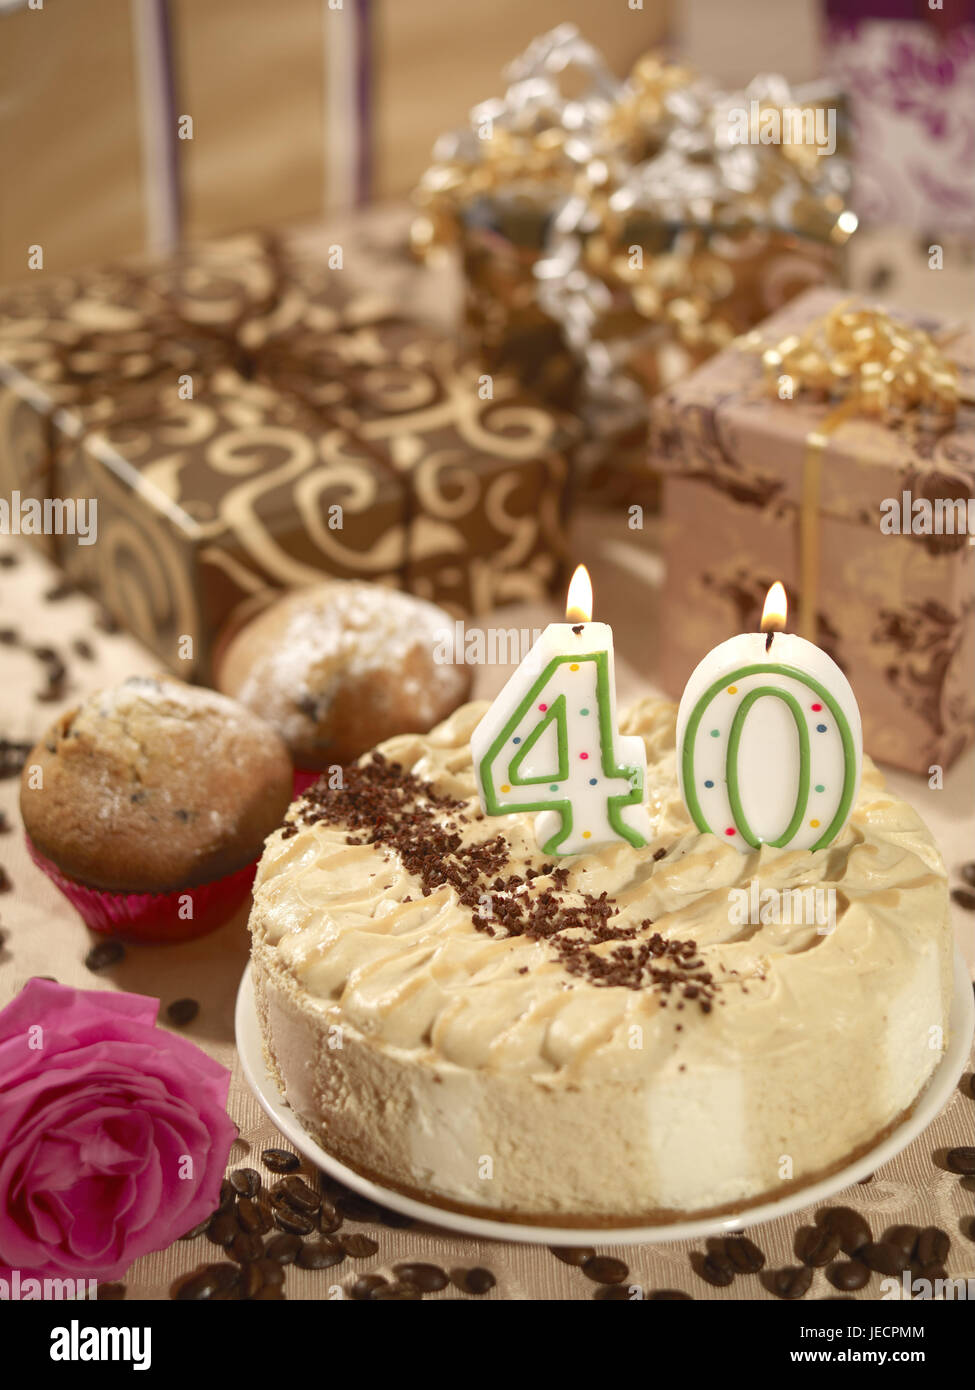 Gâteau d'anniversaire, skyers, 40, présente, muffins, gâteaux d'anniversaire, gâteaux, cake, crème gateau, calorie empire, anniversaire skyers, nombre, brûler, anniversaire, fête, anniversaire, enveloppé, grains de café, de moka, moka haricots, Deko, brown, rose, fleur rose, surprise, quarante, quarantième, Banque D'Images